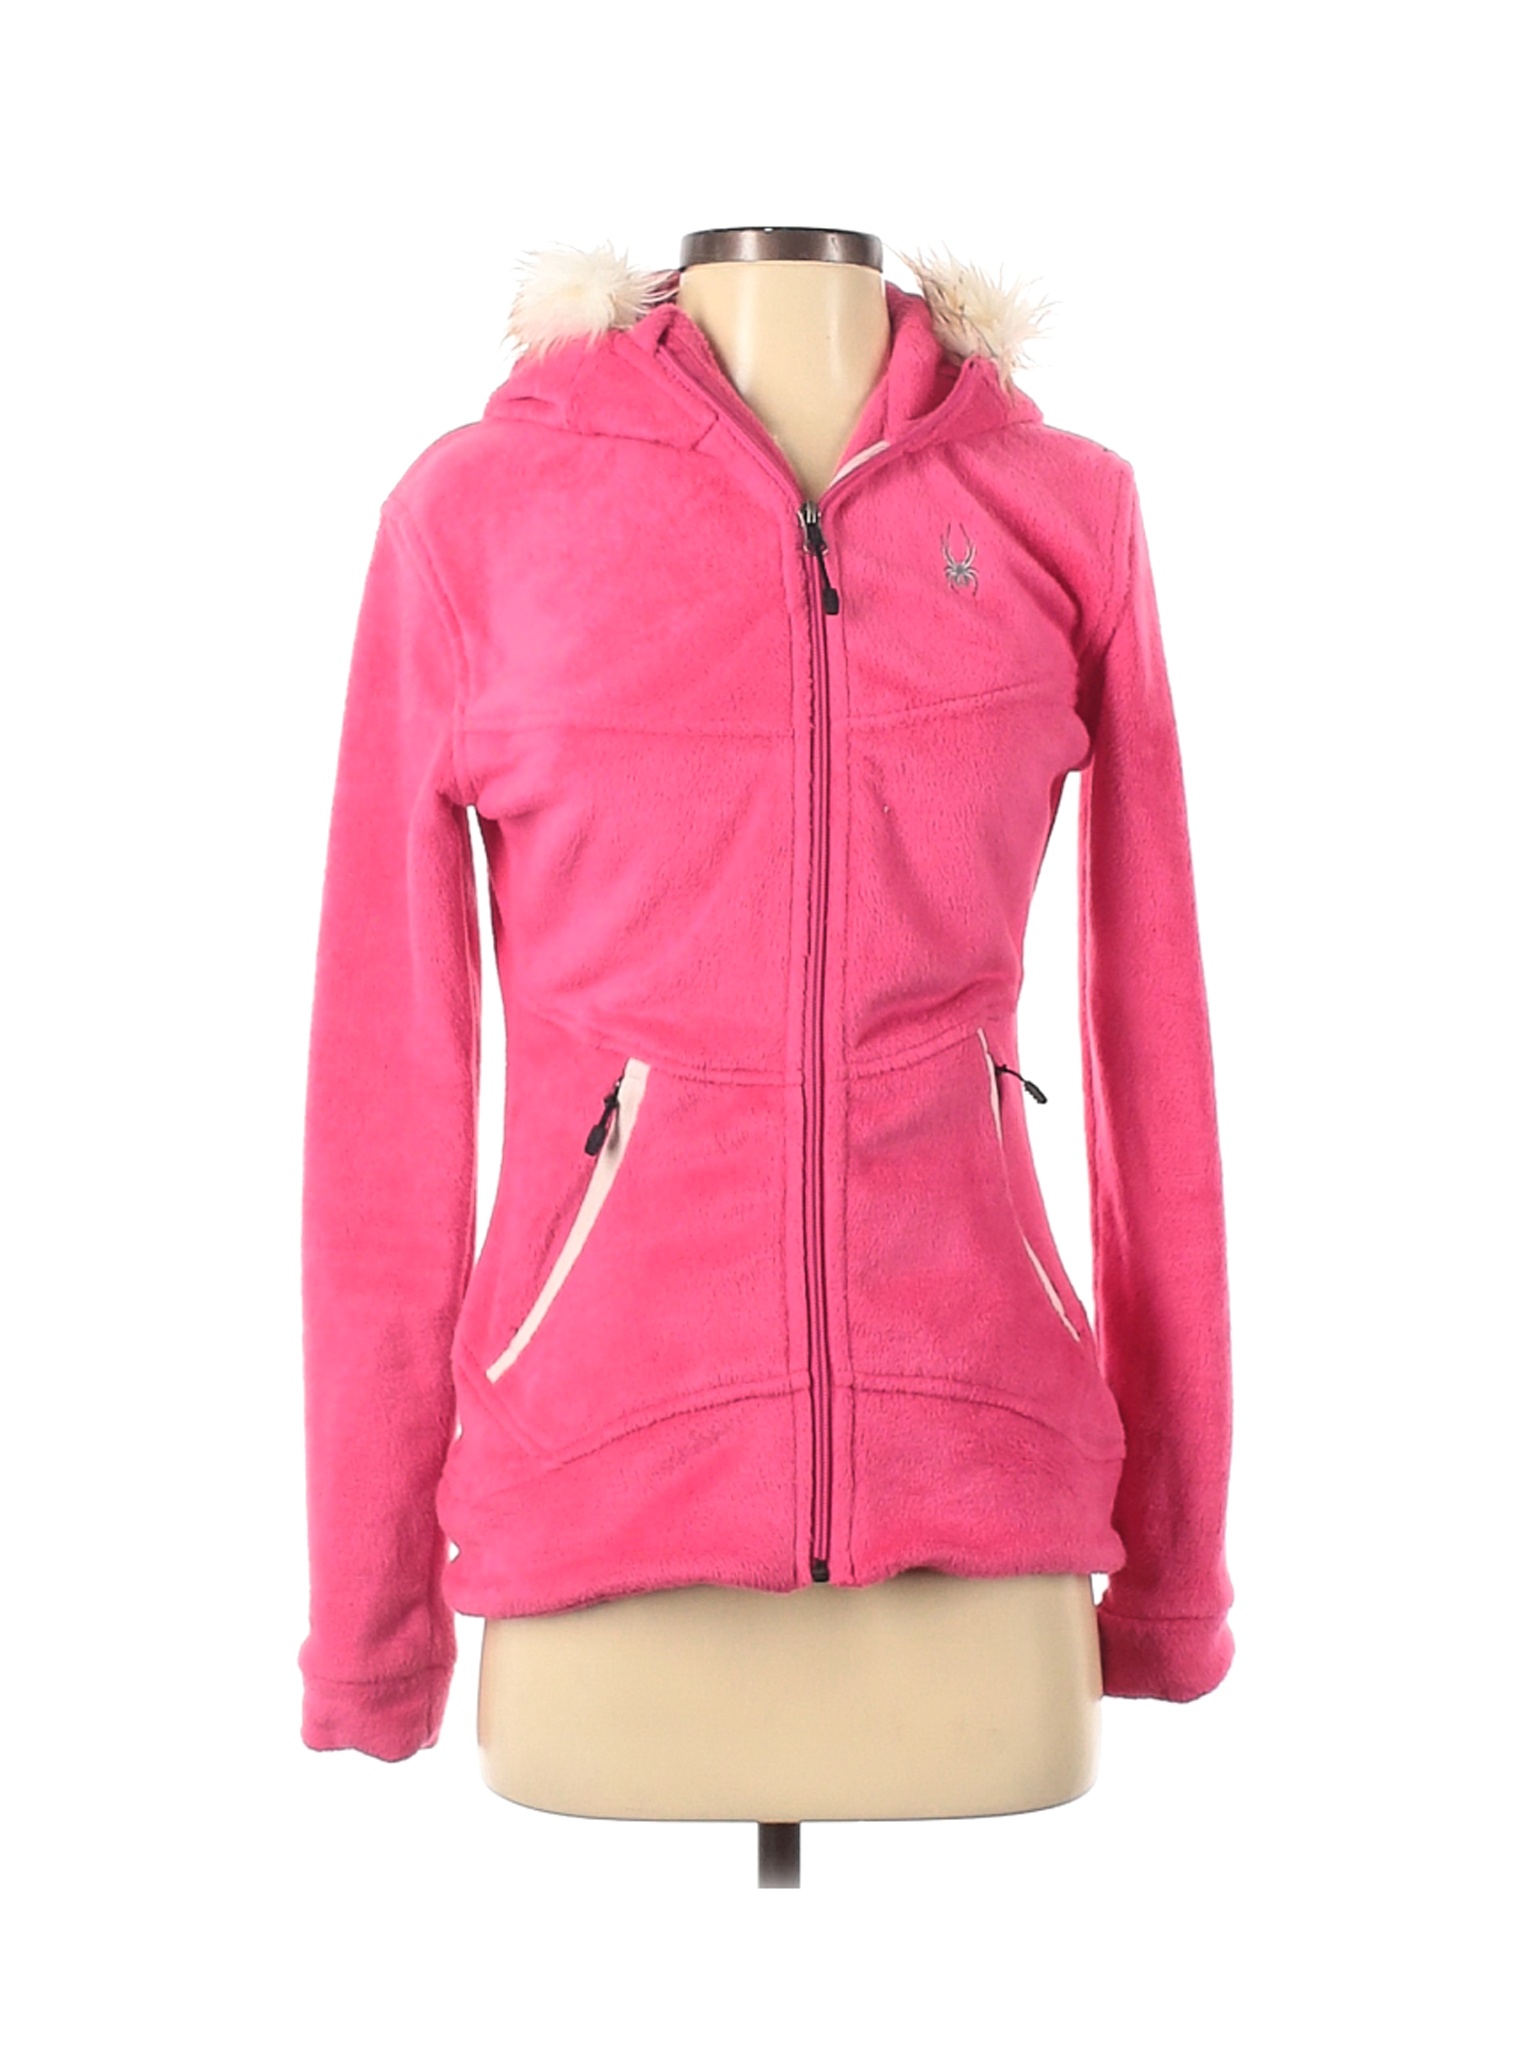 Spyder Women Pink Fleece S | eBay